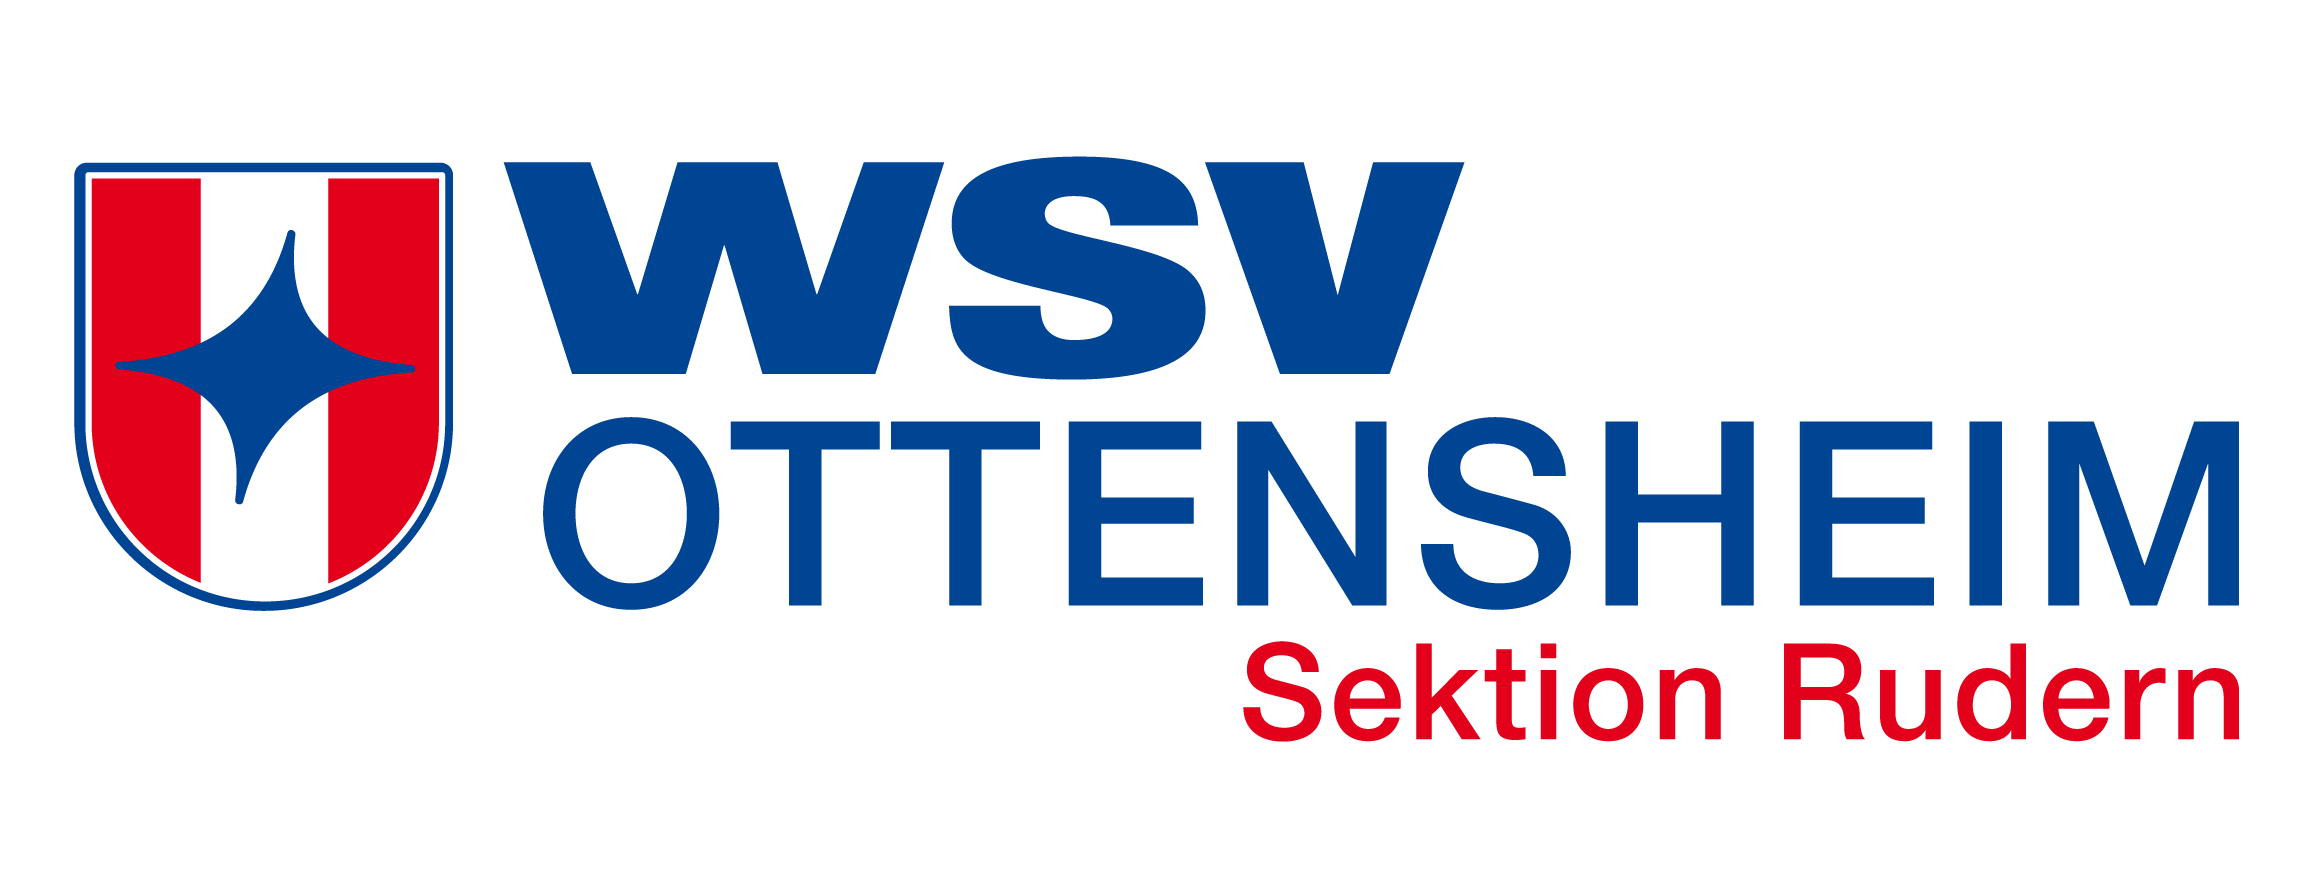 WSV-Ottensheim